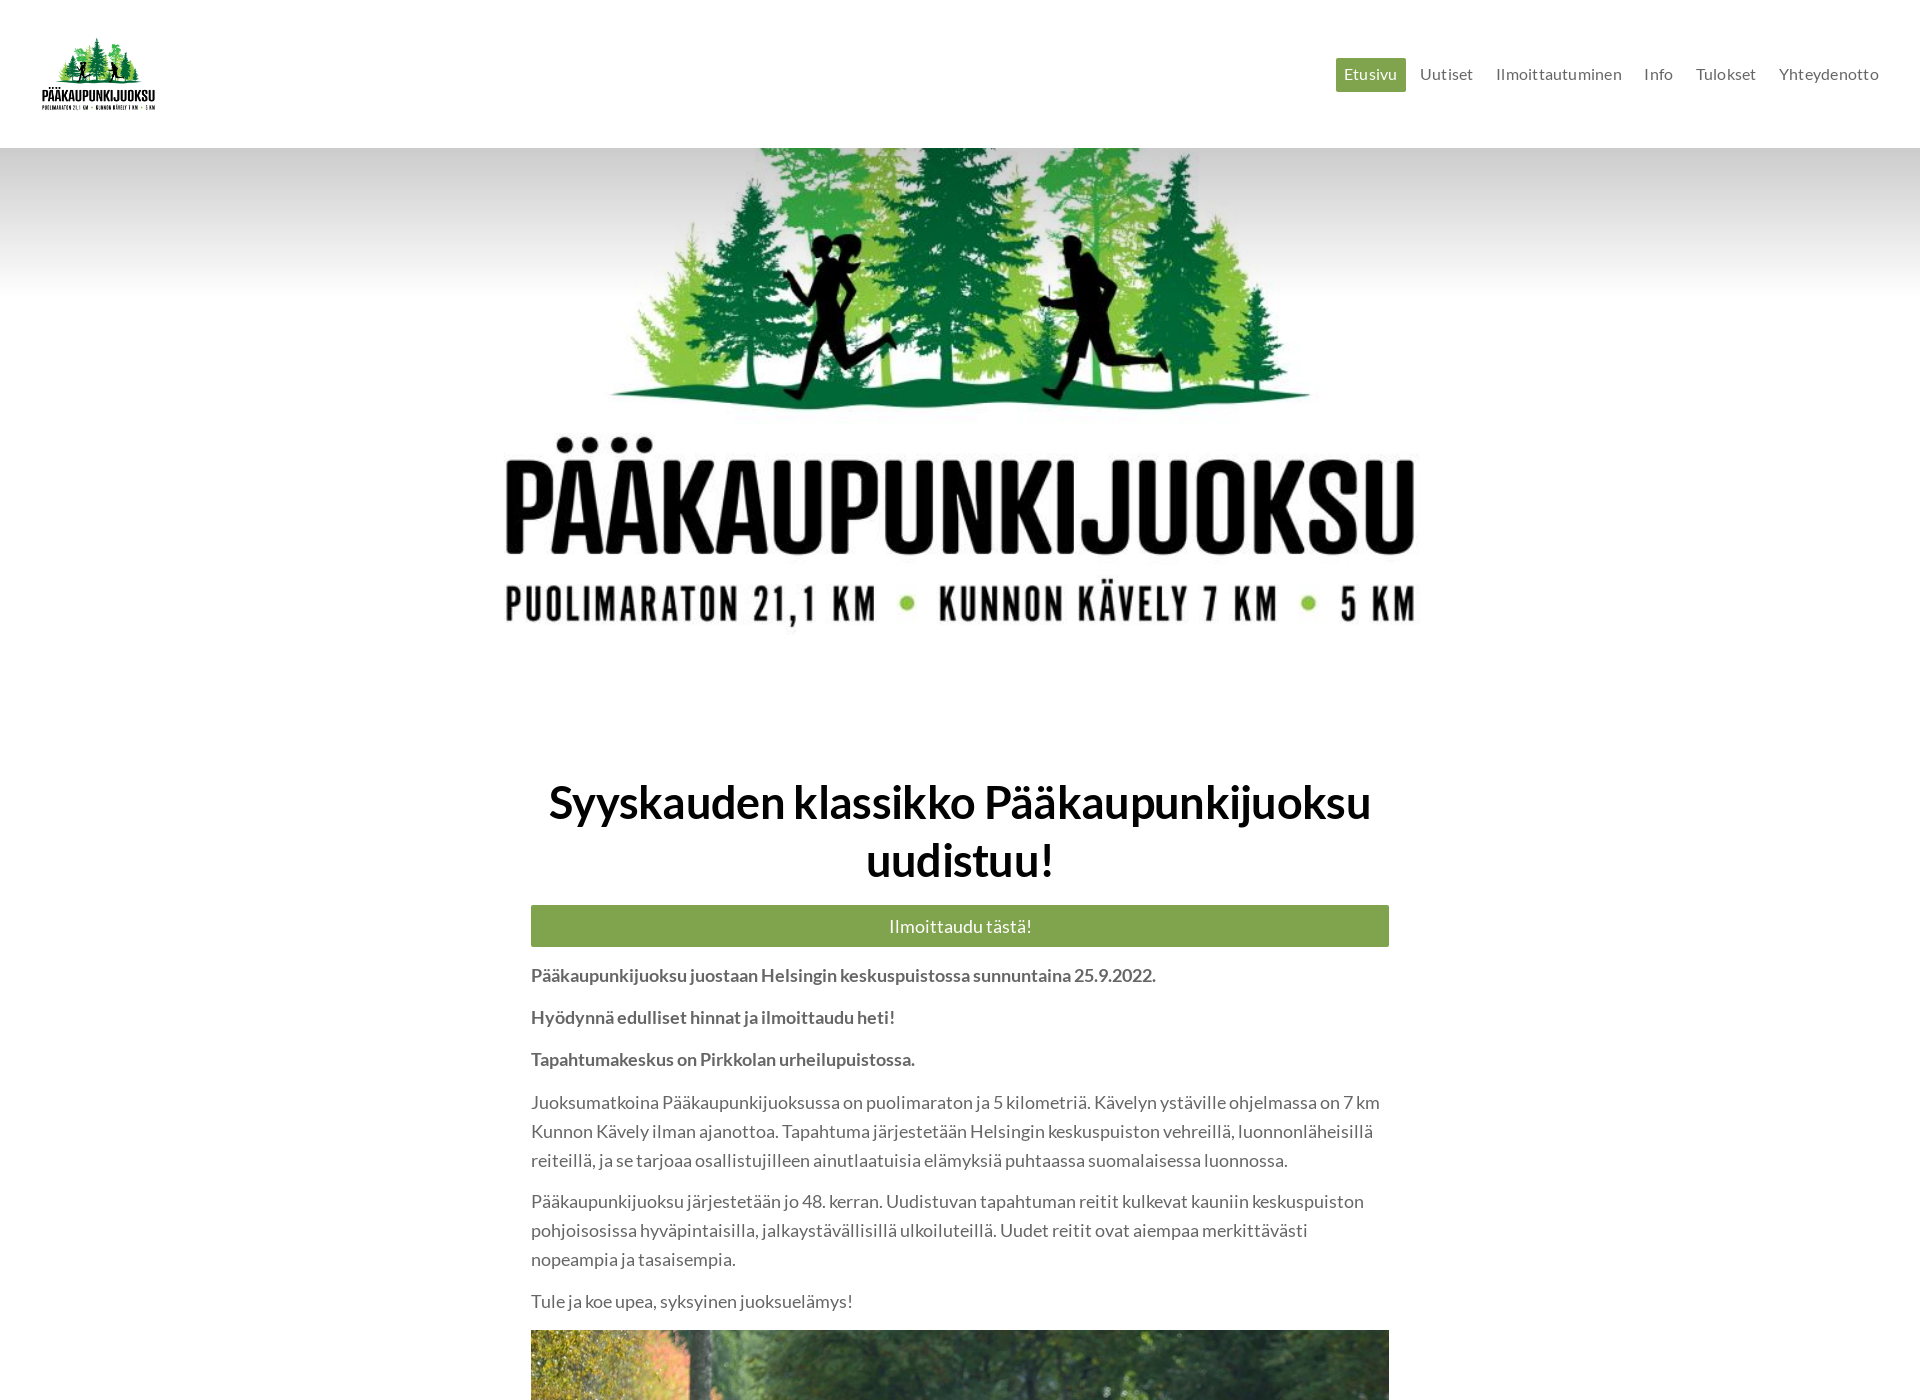 Näyttökuva paakaupunkijuoksu.fi